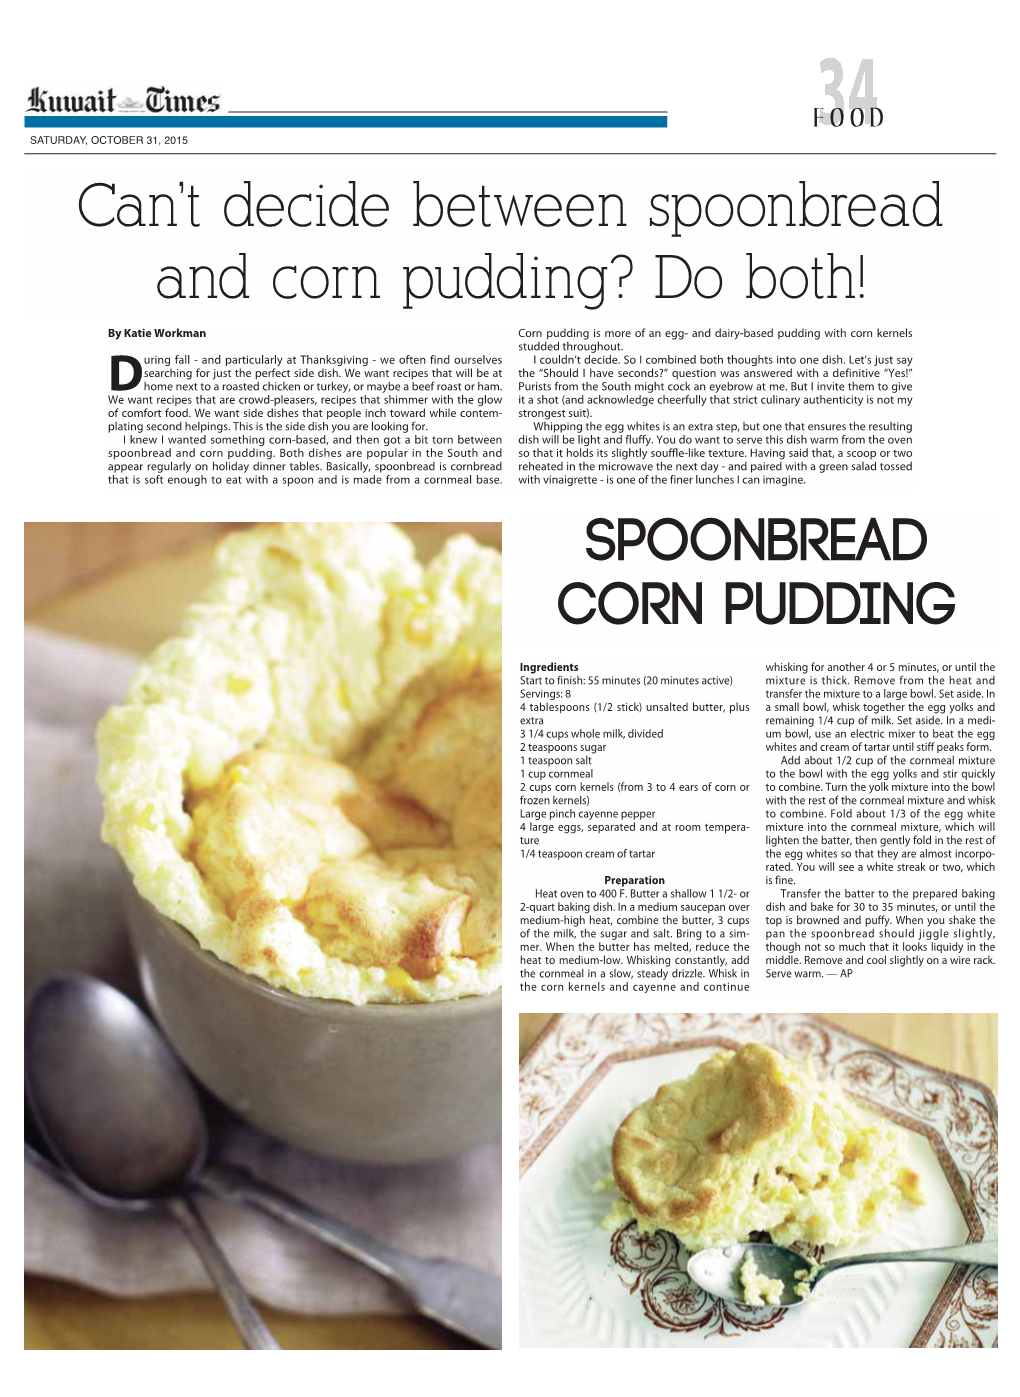 Spoonbread Corn Pudding